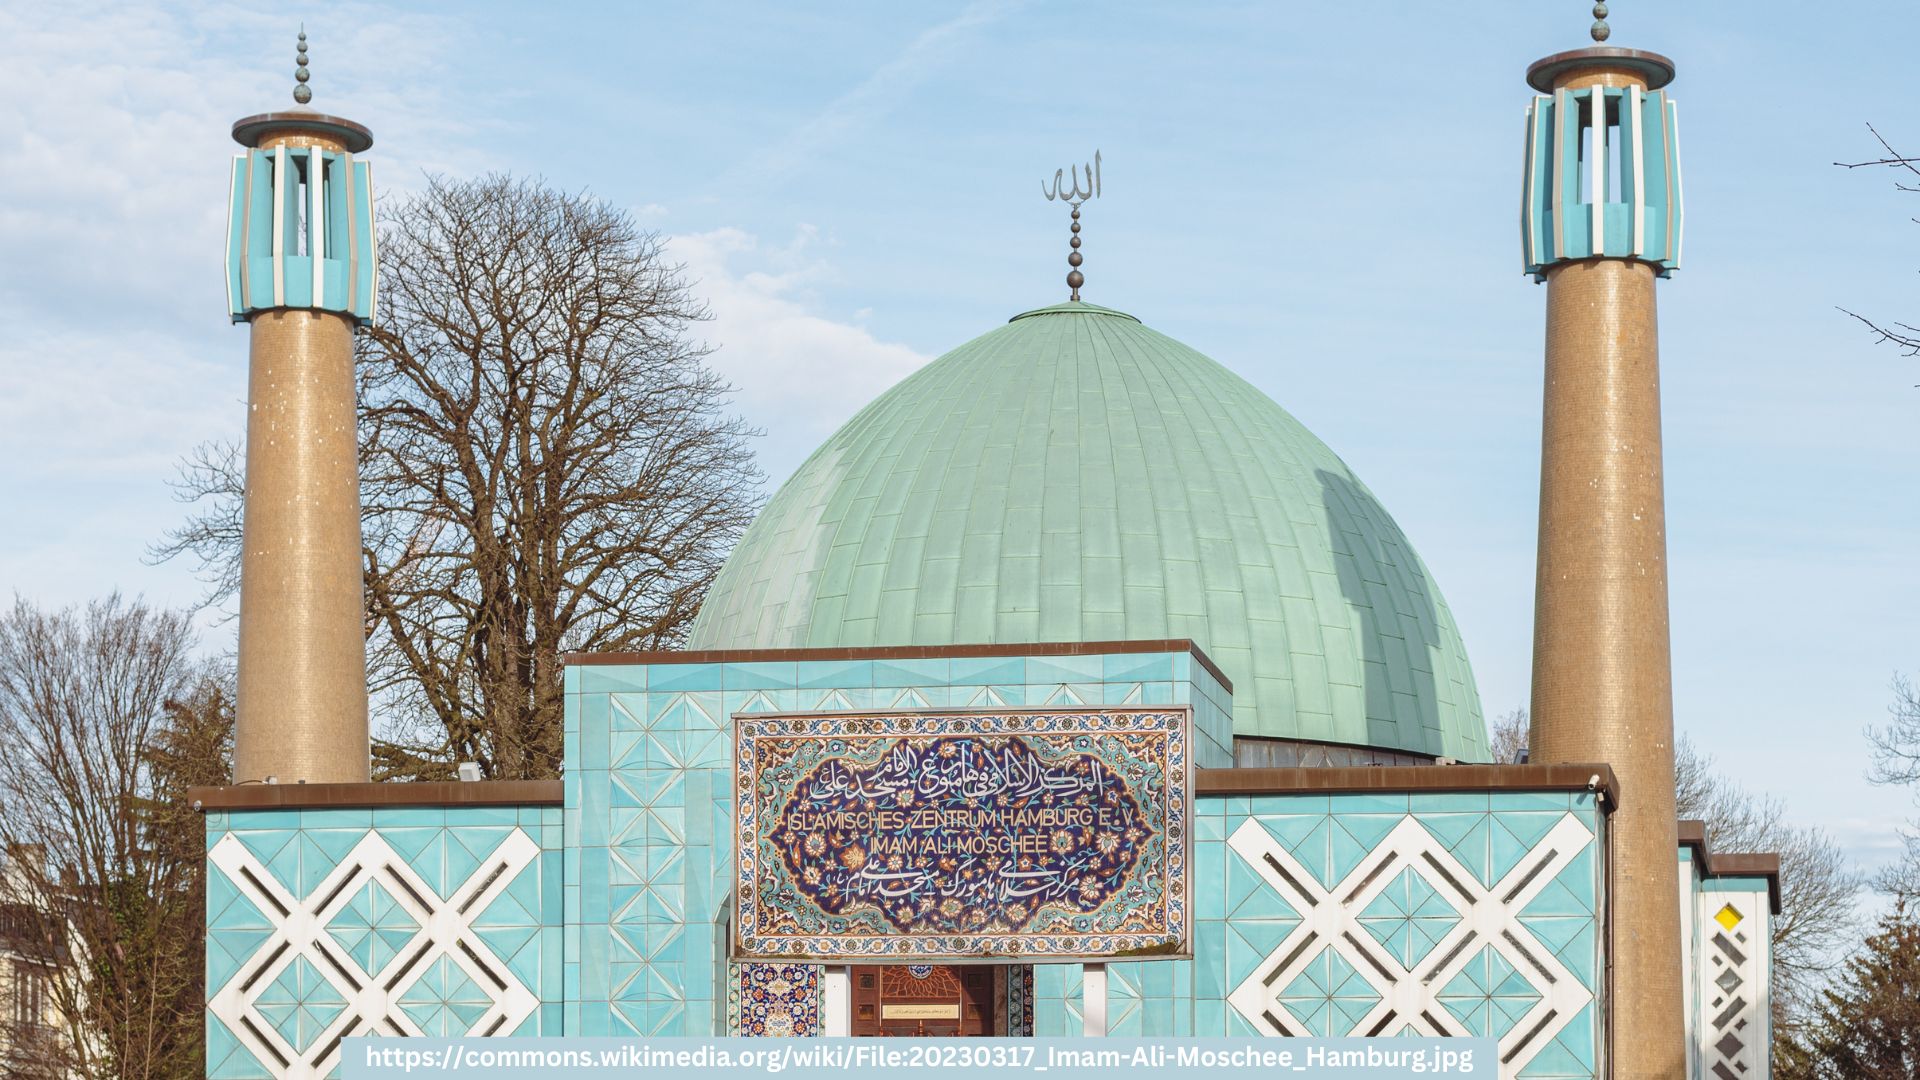 Bundesministerium des Innern und für Heimat verbietet „Islamisches Zentrum Hamburg e.V.“ rechtswidrig